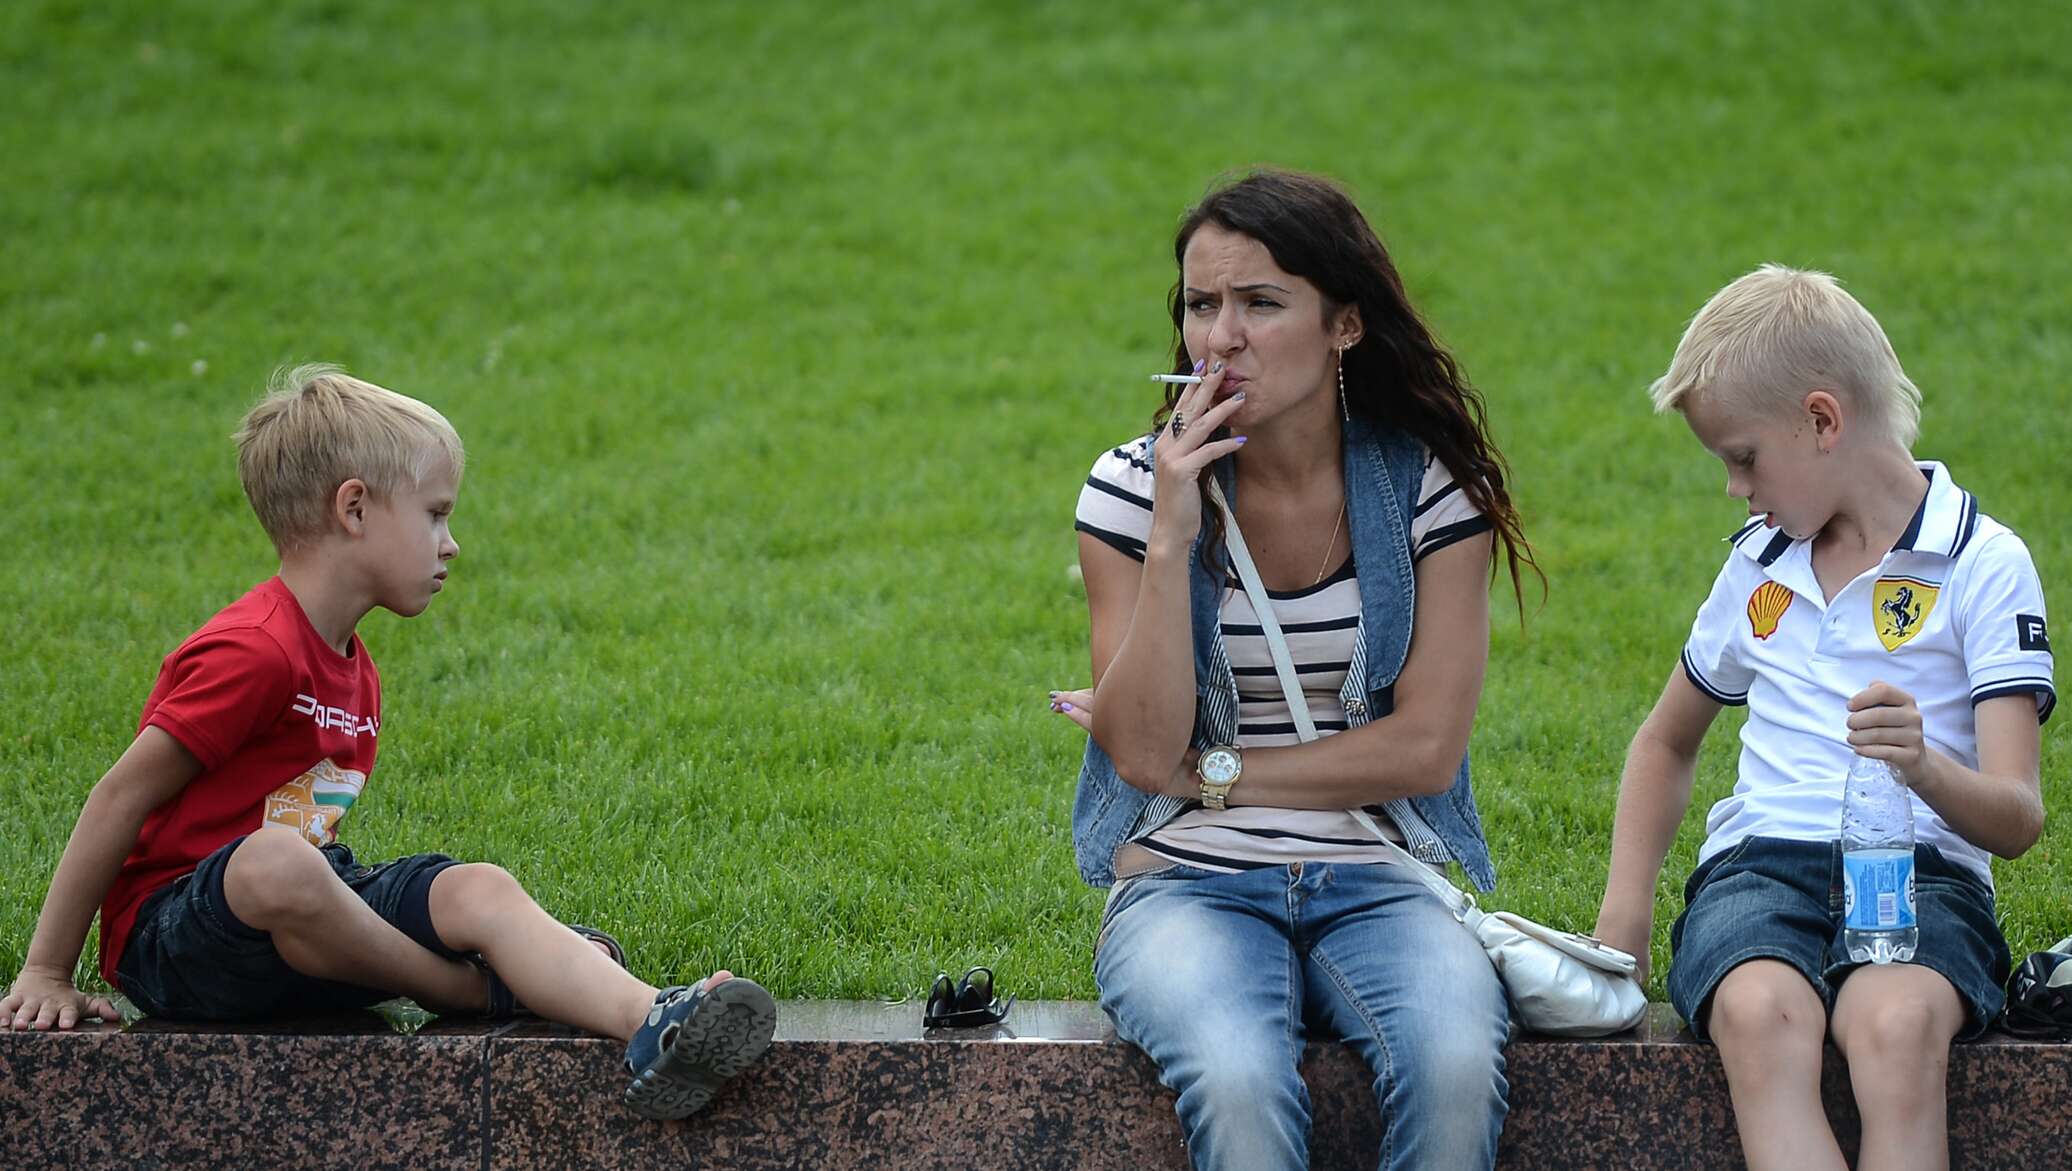 Повторяют ли дети. Курящая мама с ребенком. Курение рядом с детьми. Родители с детьми на детской площадке.